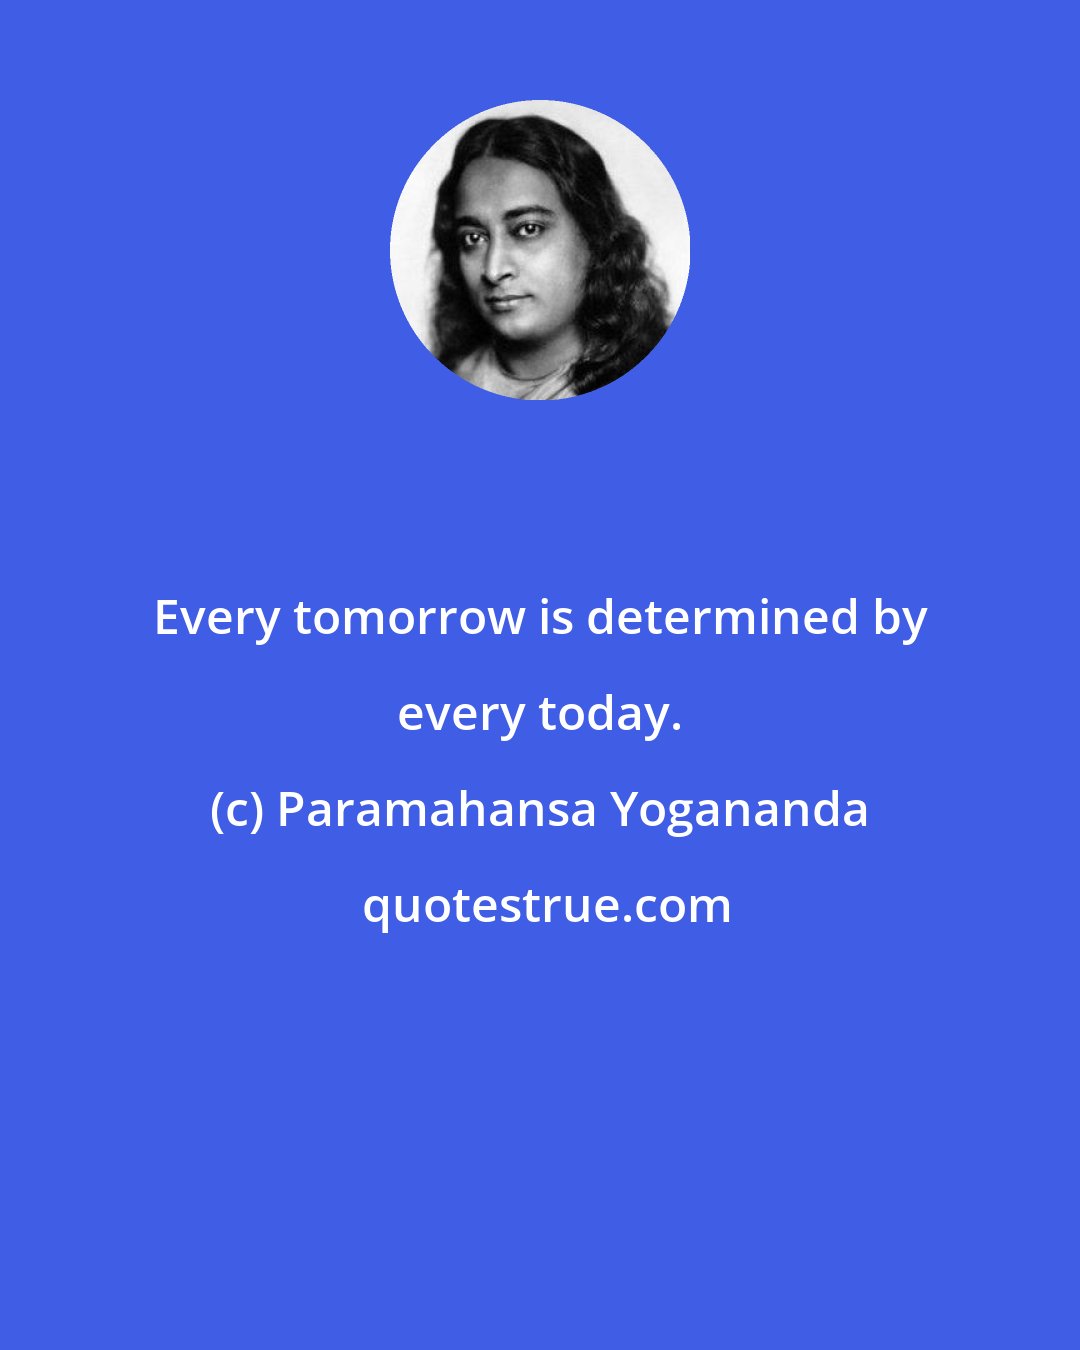 Paramahansa Yogananda: Every tomorrow is determined by every today.